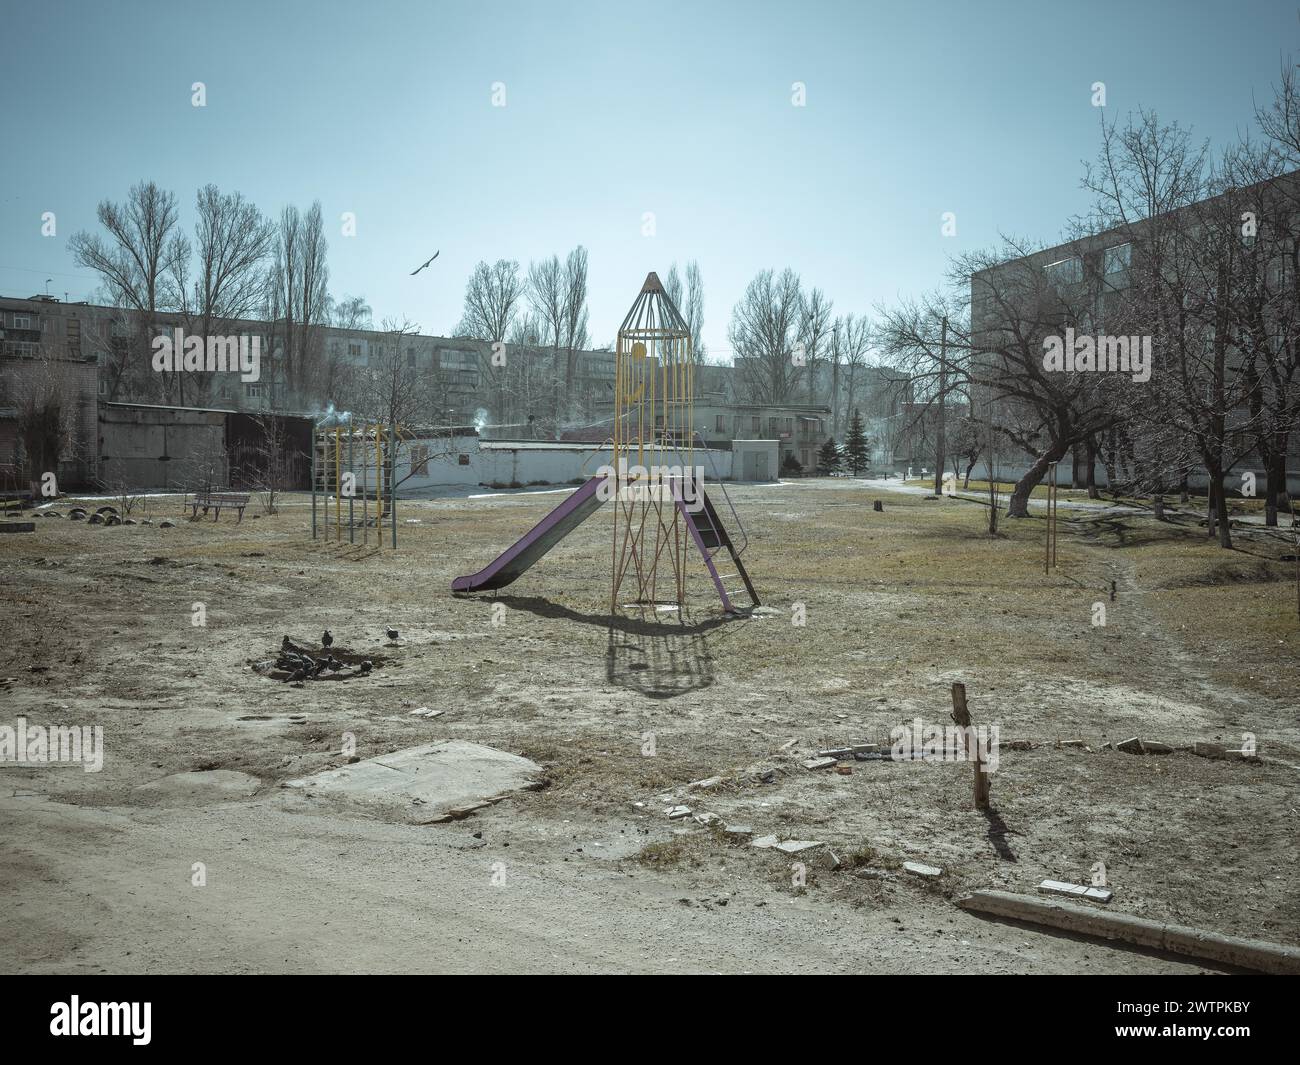 Aire de jeux dans un quartier résidentiel près du front, Kupyansk, oblast de Kharkiv, Ukraine, Europe Banque D'Images